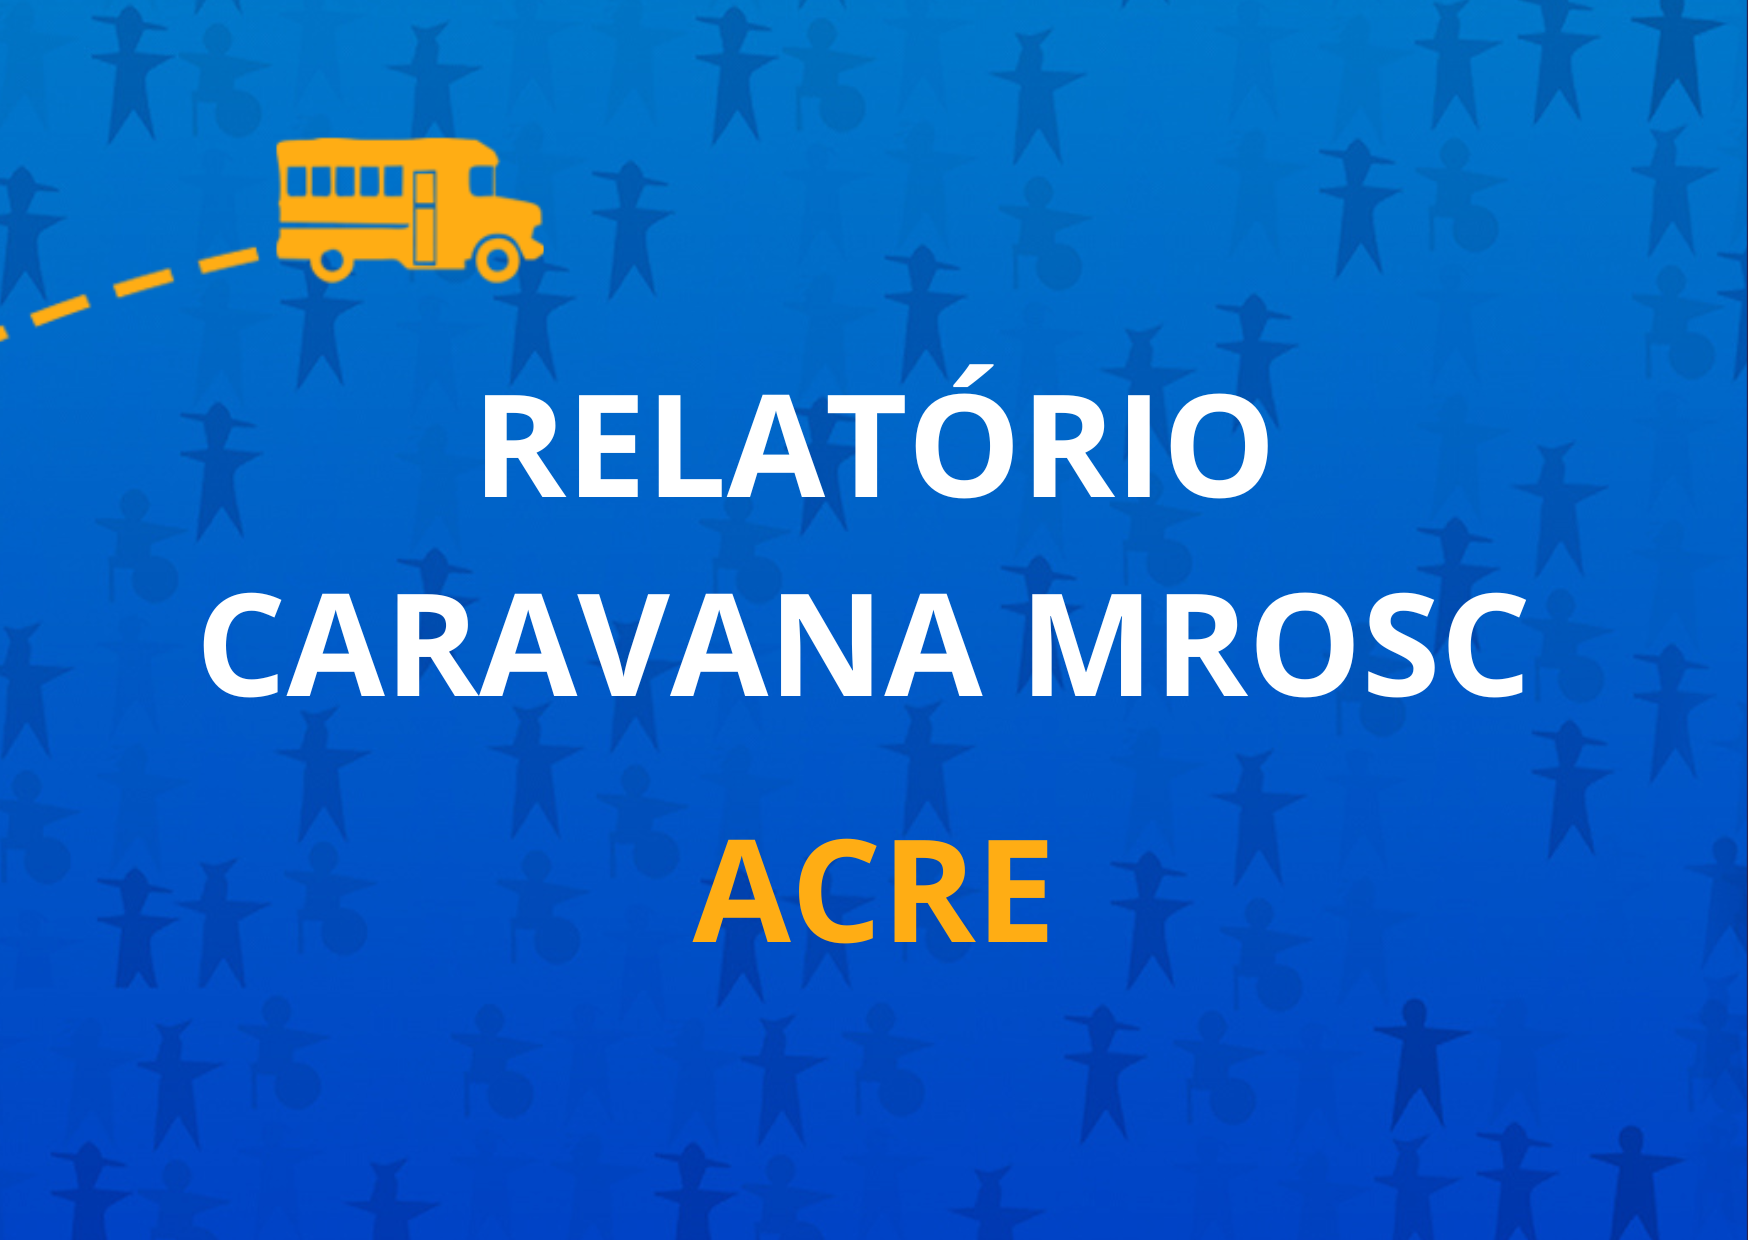 Relatório Caravana MROSC Acre